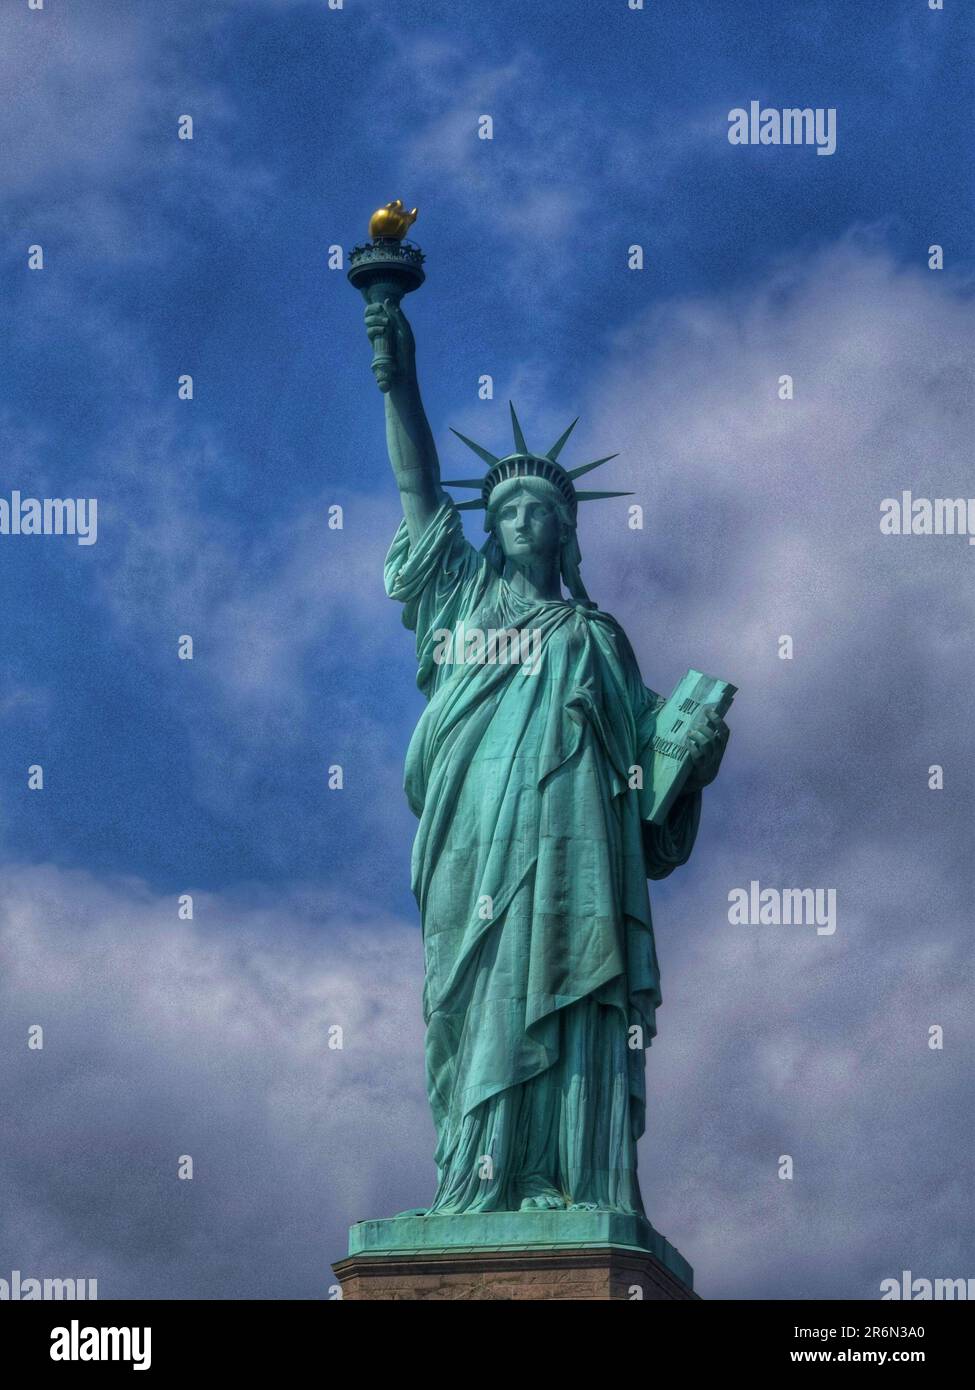 Esplora il fascino senza tempo di New York City e la Statua della libertà attraverso accattivanti fotografie, rivelando l'energia vibrante e iconica della città Foto Stock